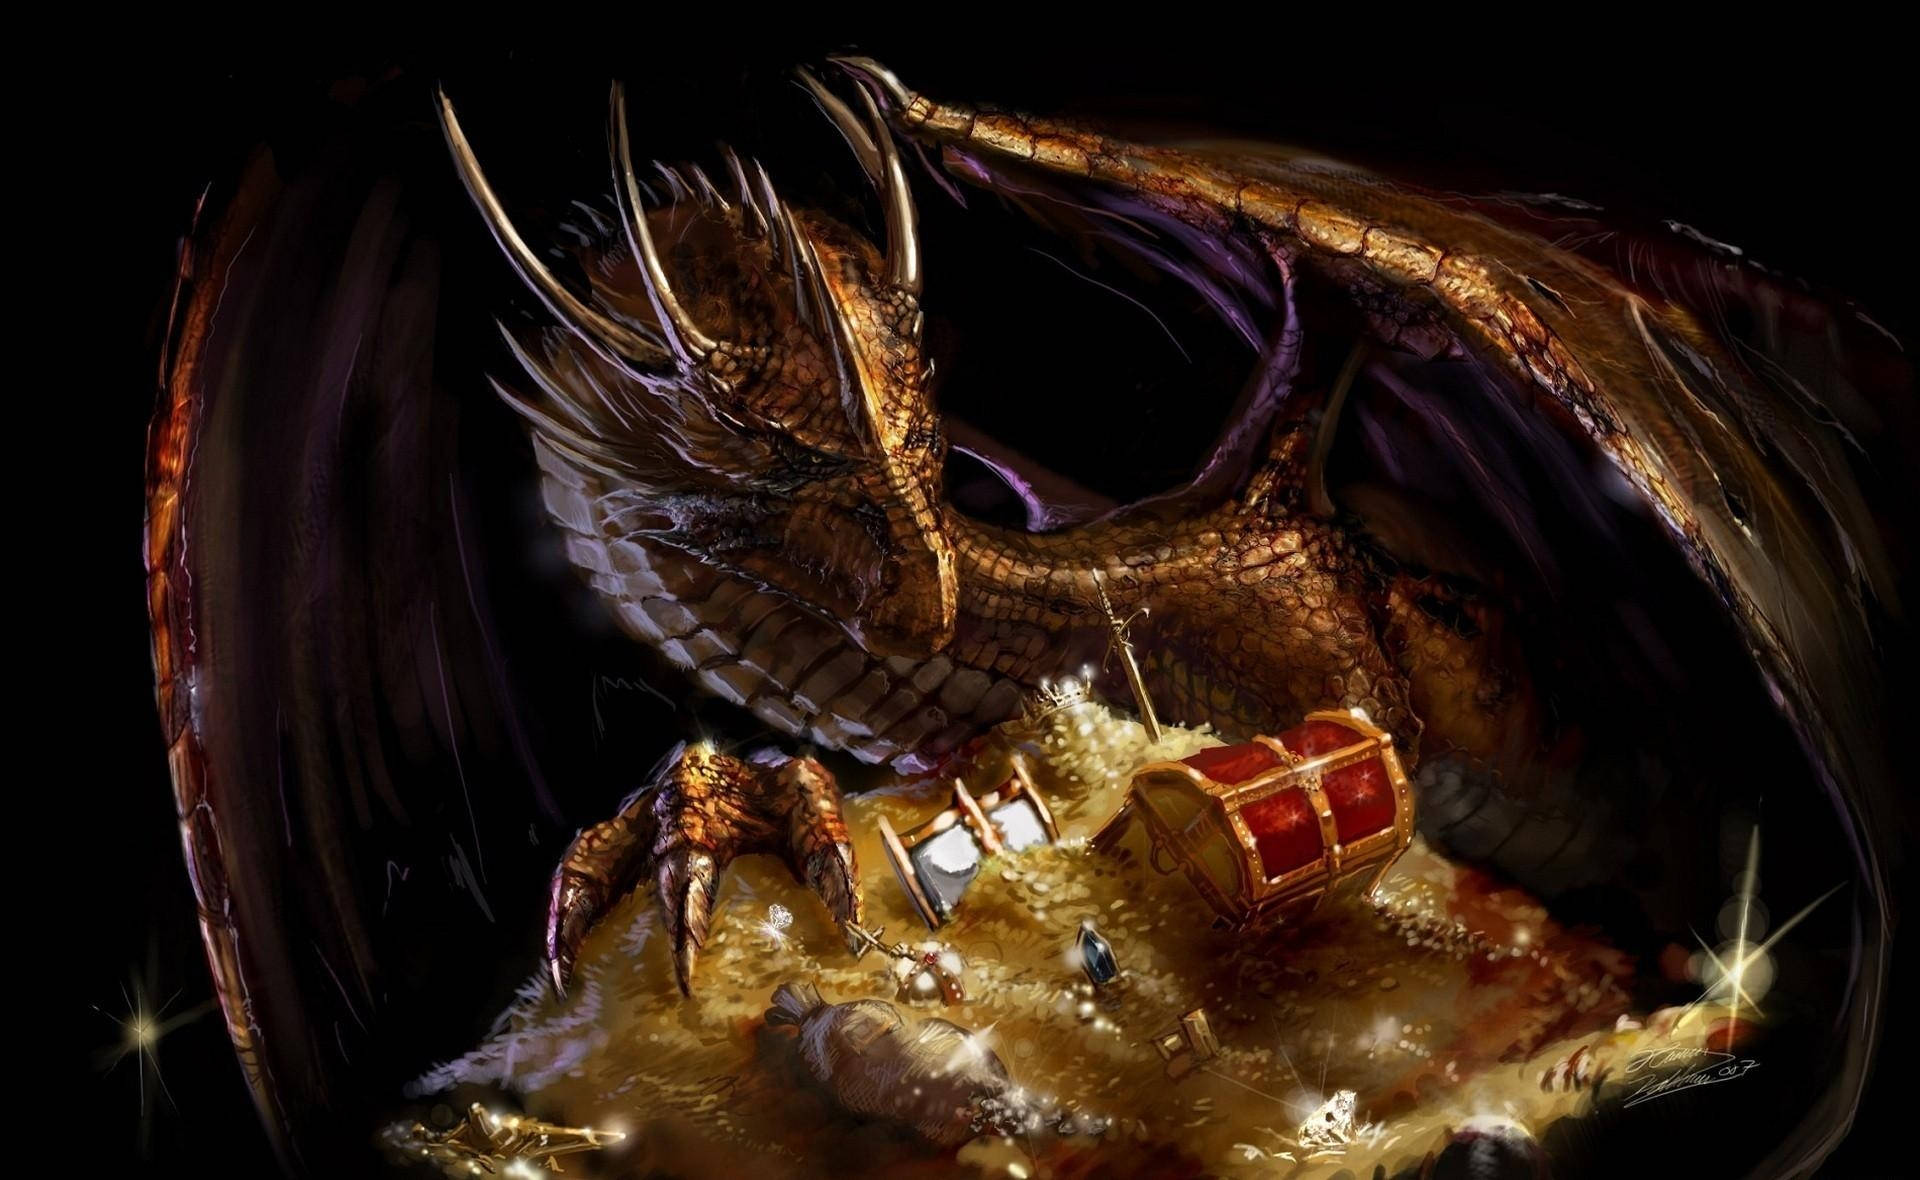 “A Dragon Guarding its Treasure” Wallpaper